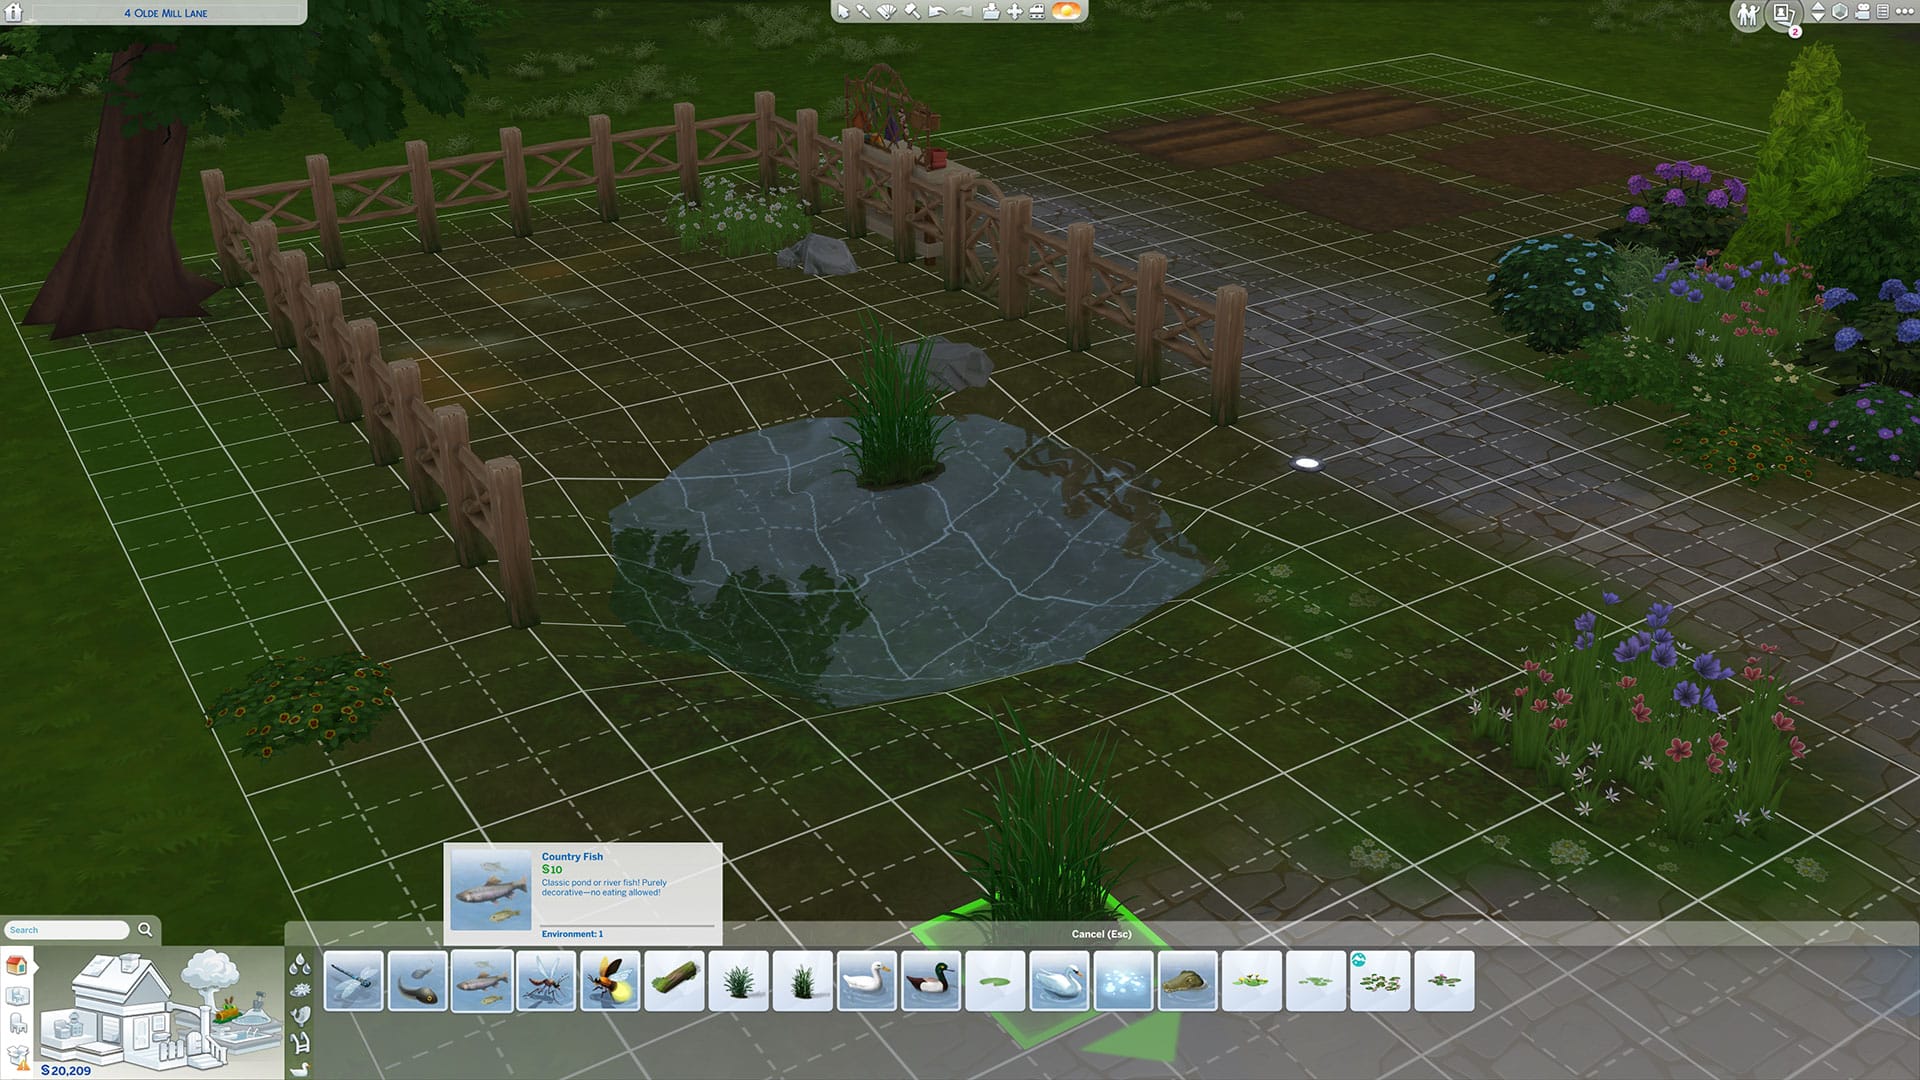 Ajouter des accessoires à votre nouvel étang Sims 4, y compris des poissons décoratifs